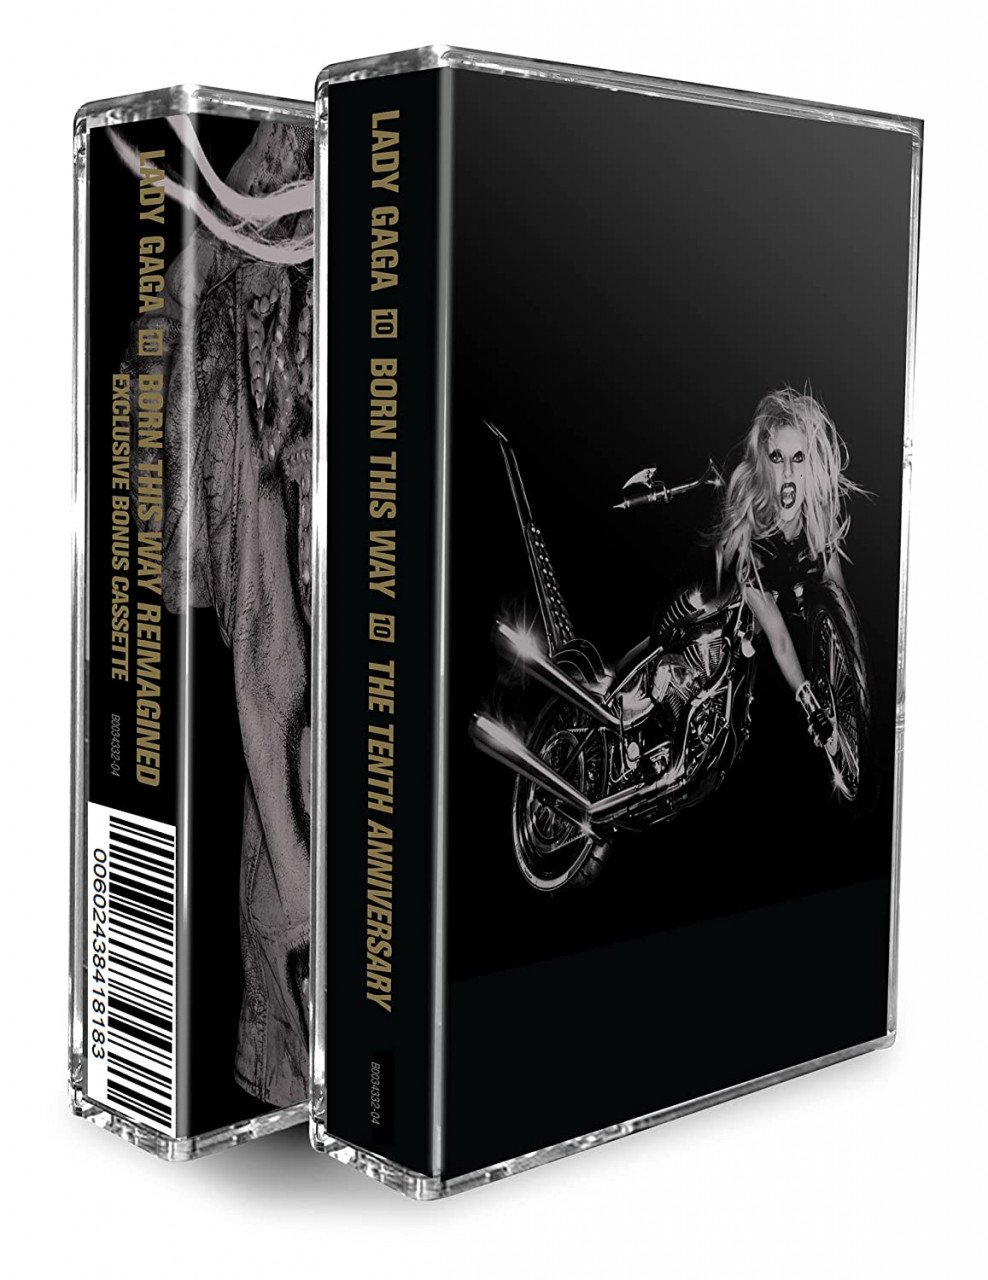 Kaset Lady Gaga edisi istimewa. Gambar: Amazon.com